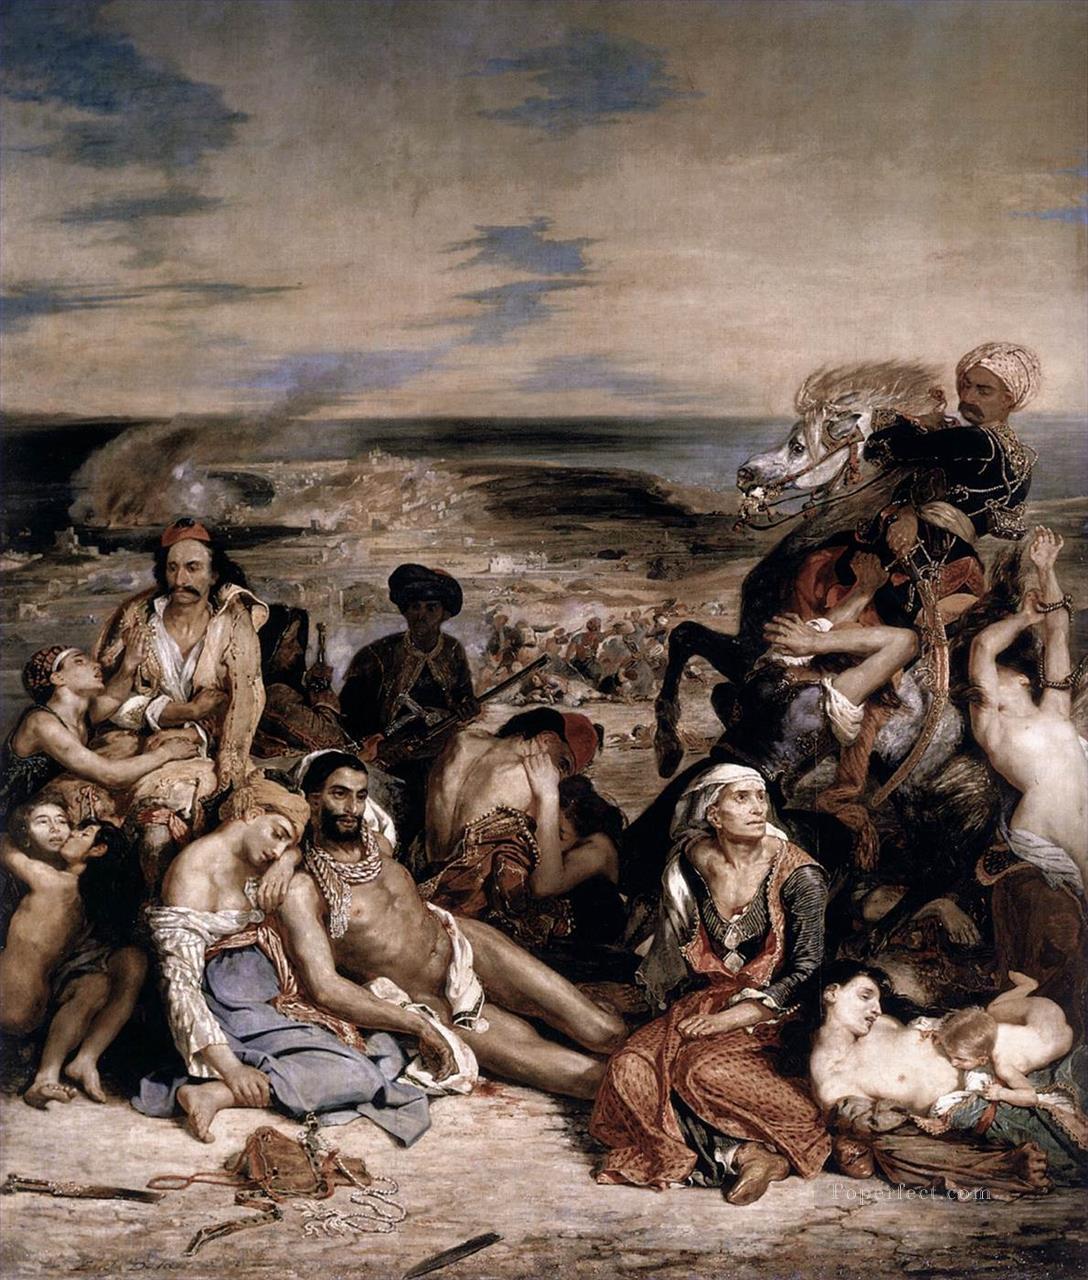 Eugène Delacroix: The Massacre at Chios